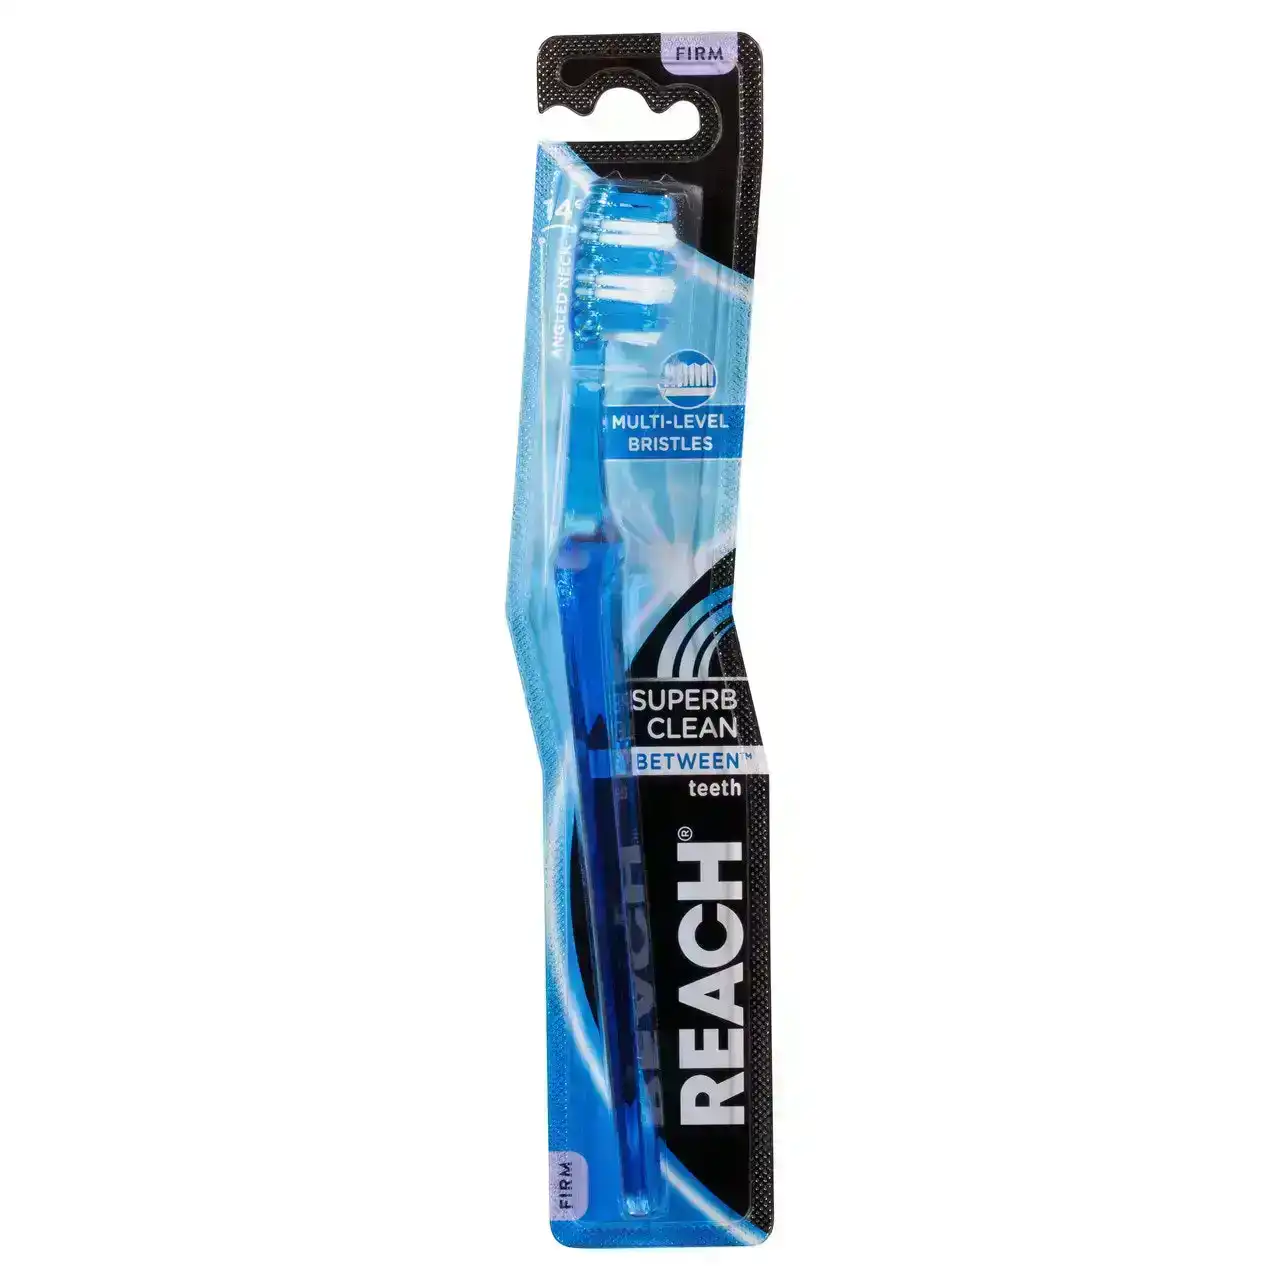 Reach(R)  Superb Clean Between Teeth Toothbrush Firm 1pk